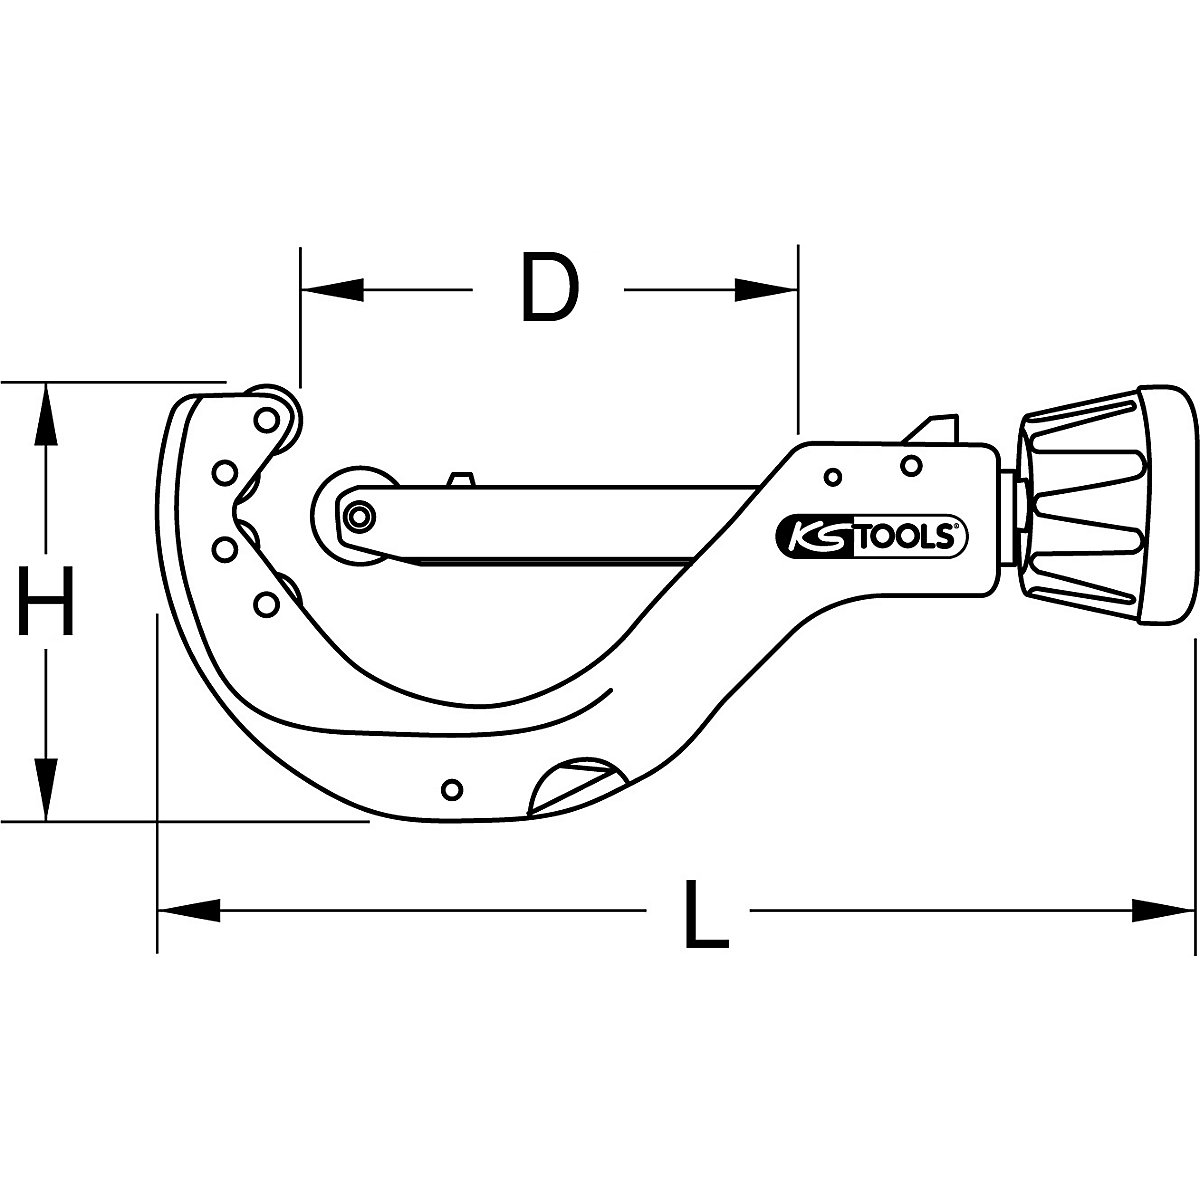 Samodejno rezilo za cevi – KS Tools (Slika izdelka 4)-3